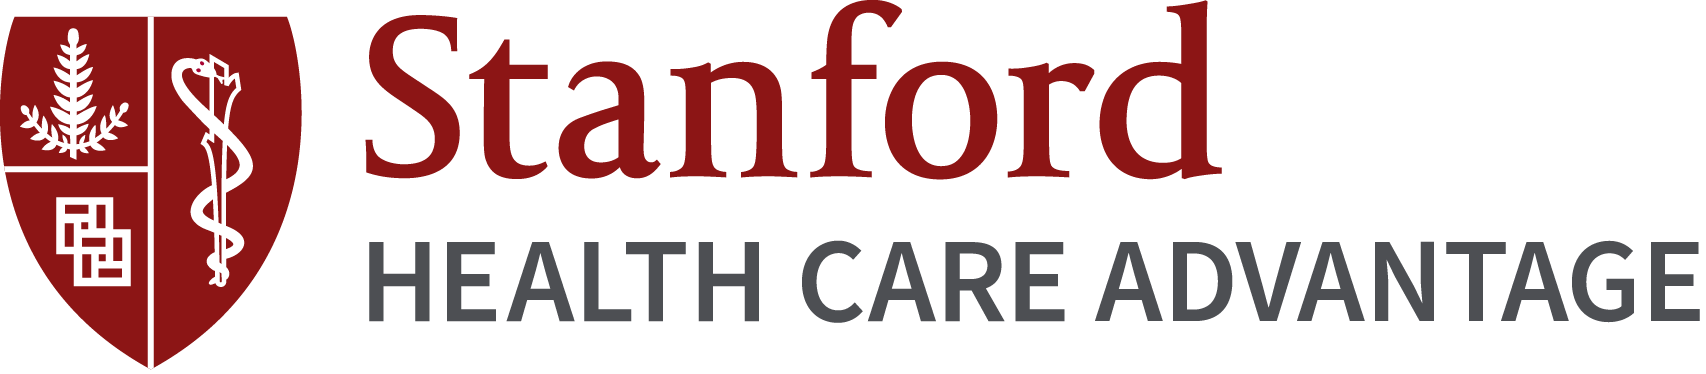 Stanford Health Care Advantage